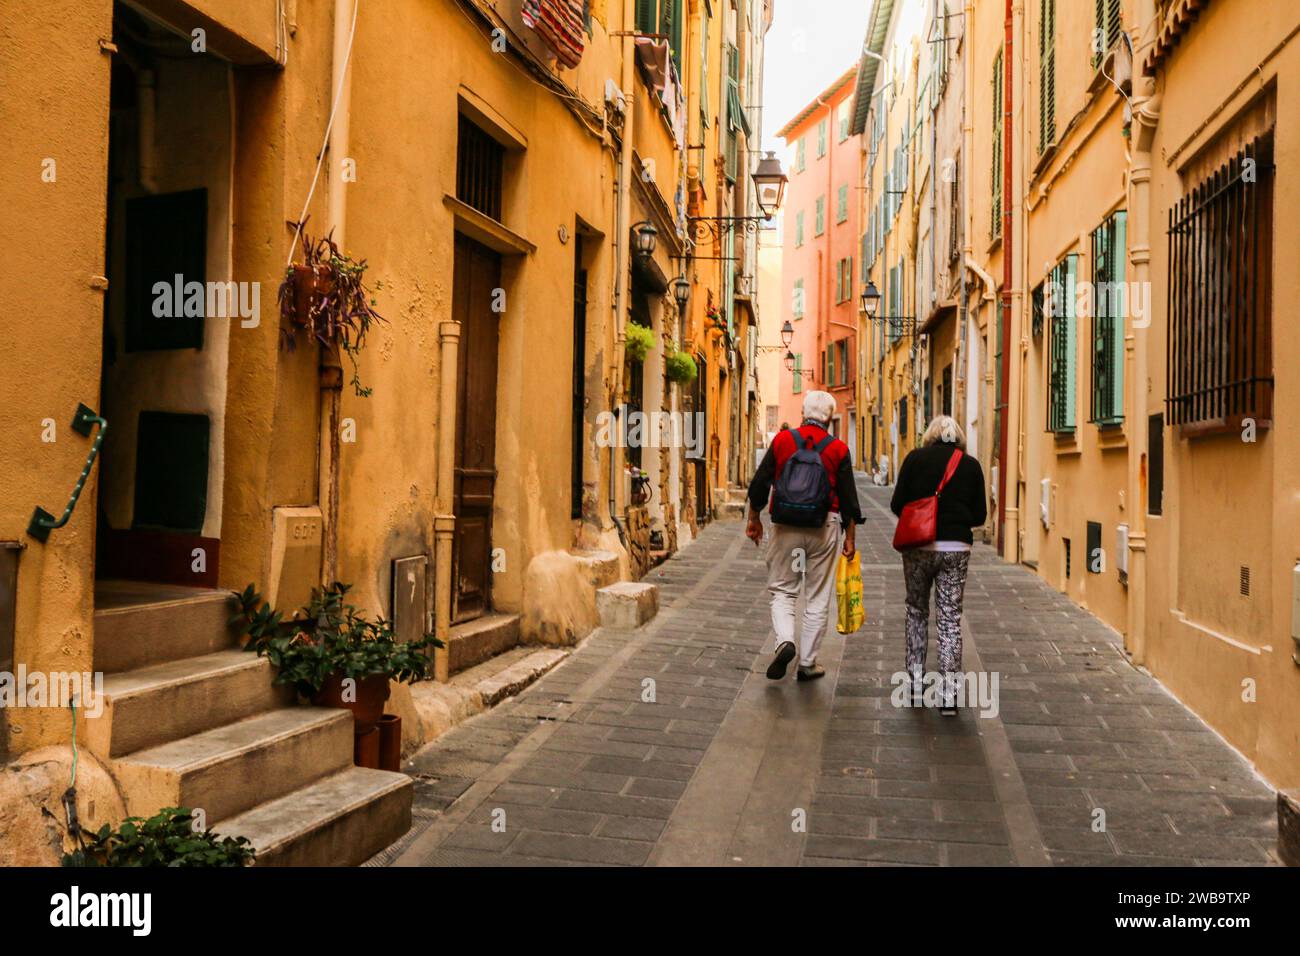 Piccola strada colorata nella città vecchia di Mentone, dipartimento delle Alpi marittime, Francia sud-orientale Foto Stock